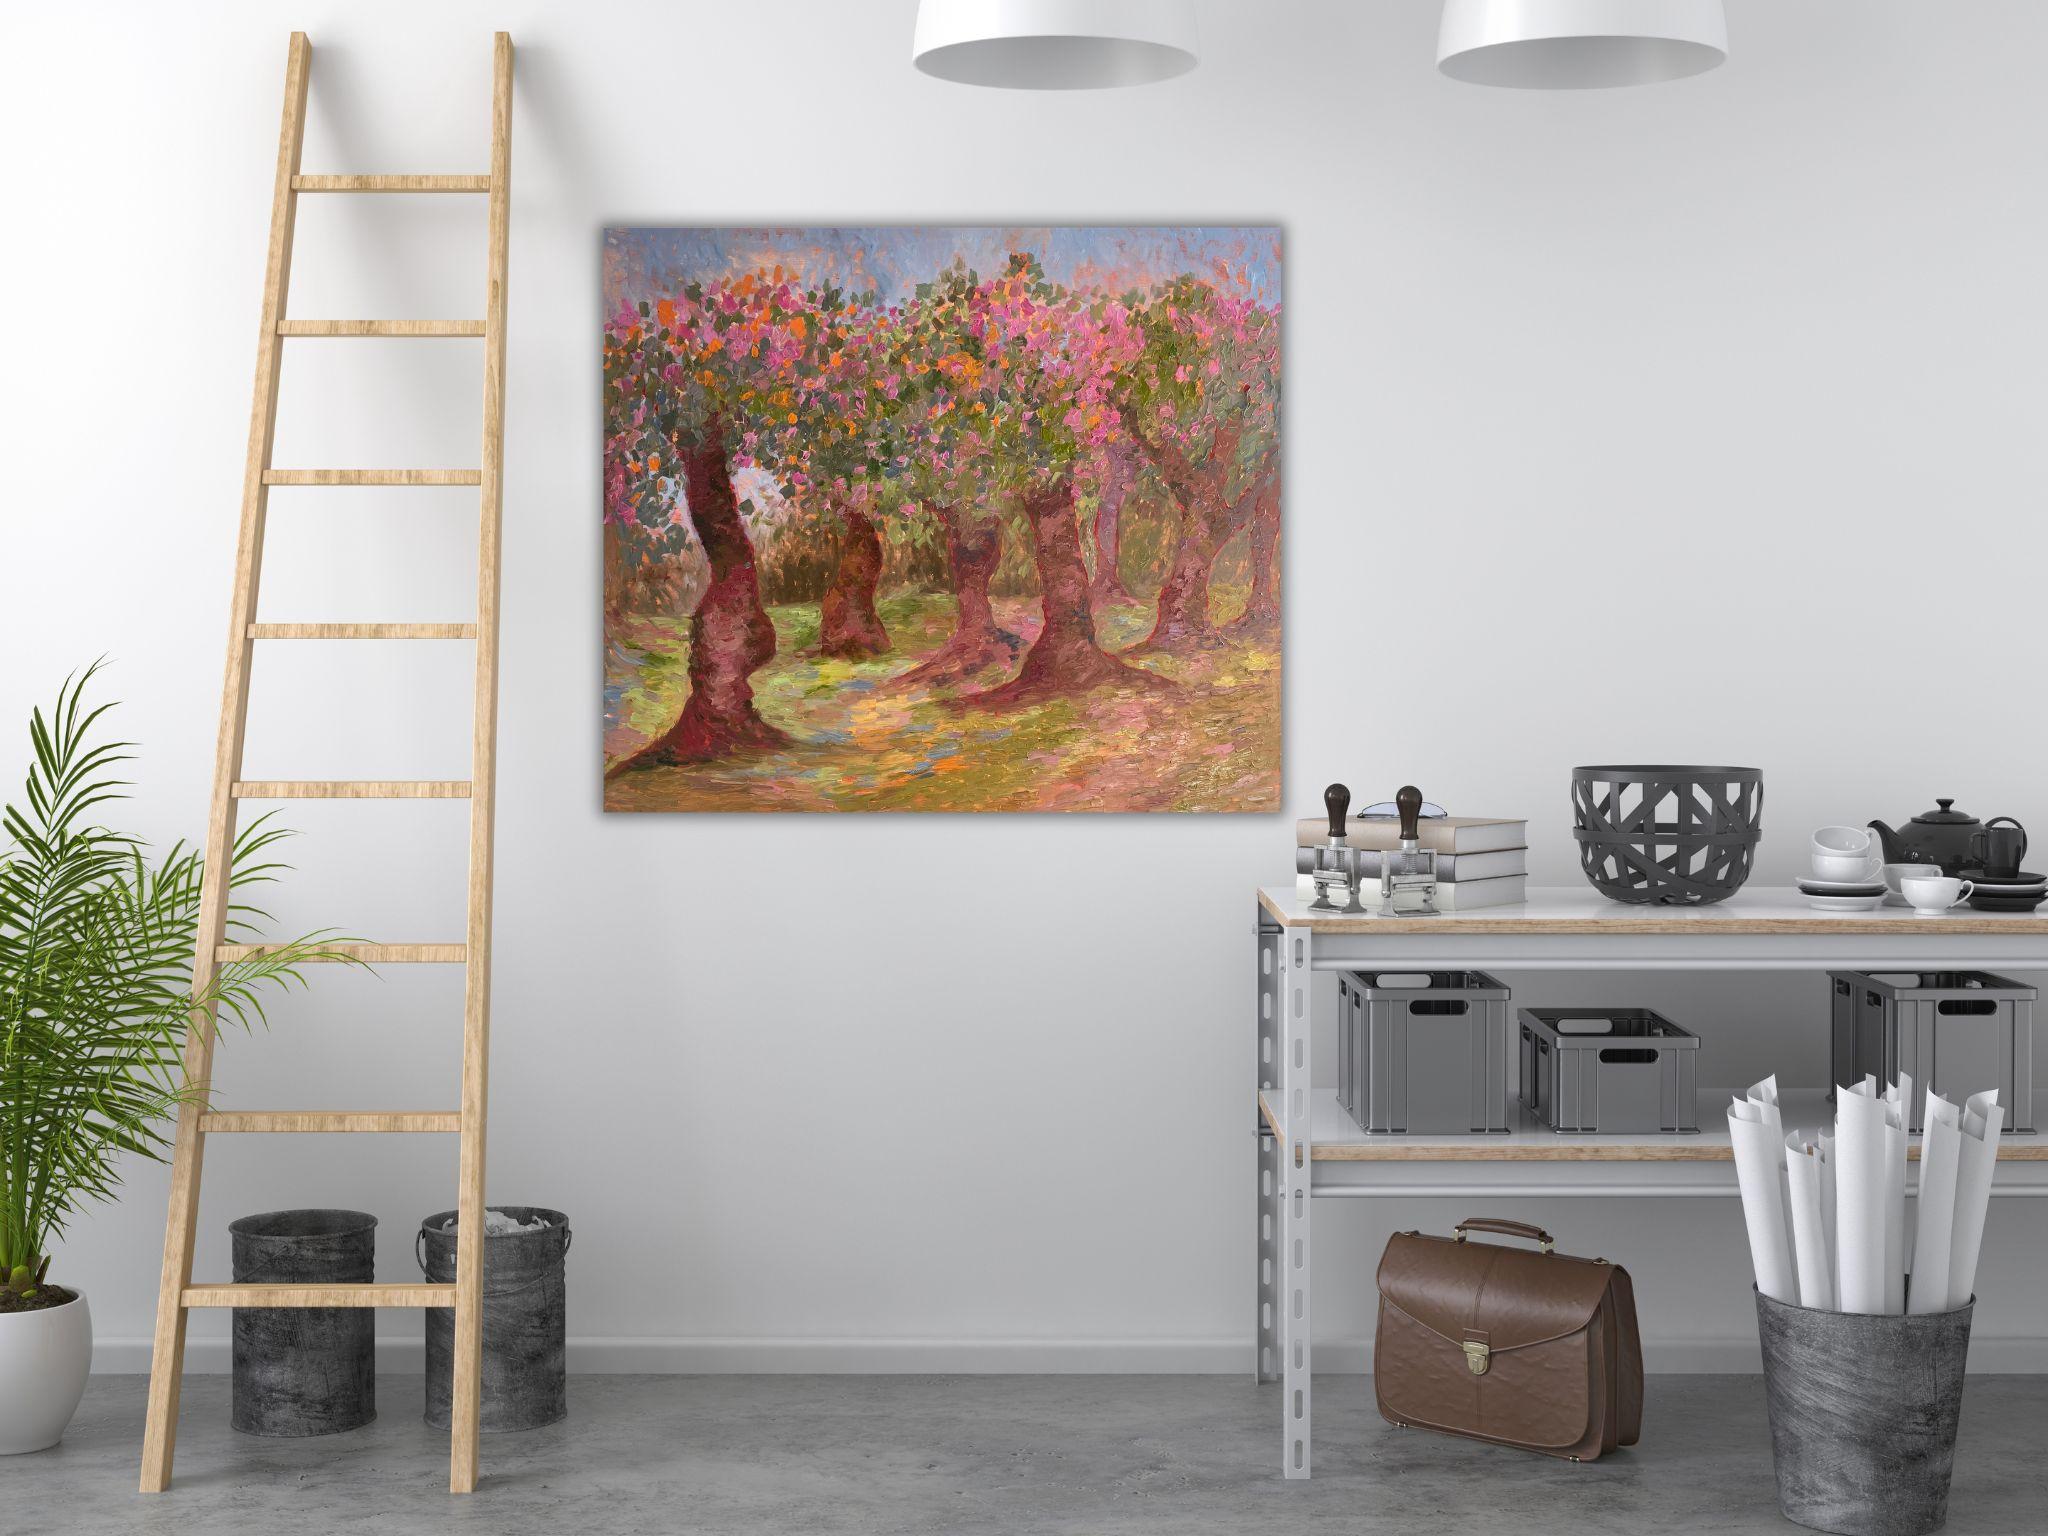 Peinture de paysage - JARDIN DE POMMES, huile sur toile - 40*32 in (100*80cm) - Impressionnisme Painting par Dasha Pogodina